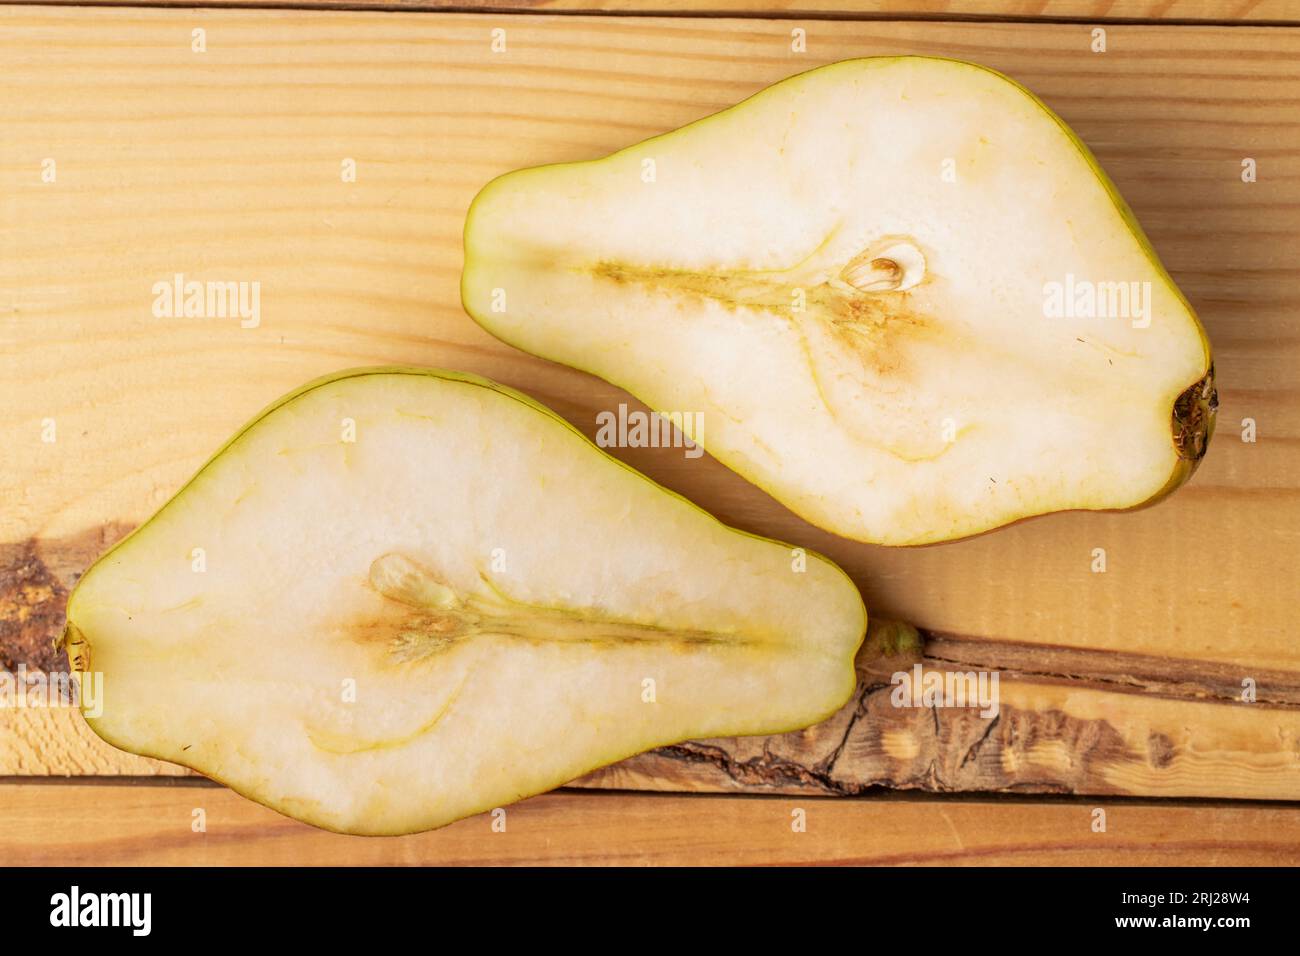 Deux moitiés d'une poire juteuse mûre, gros plan, sur une table en bois, vue de dessus. Banque D'Images